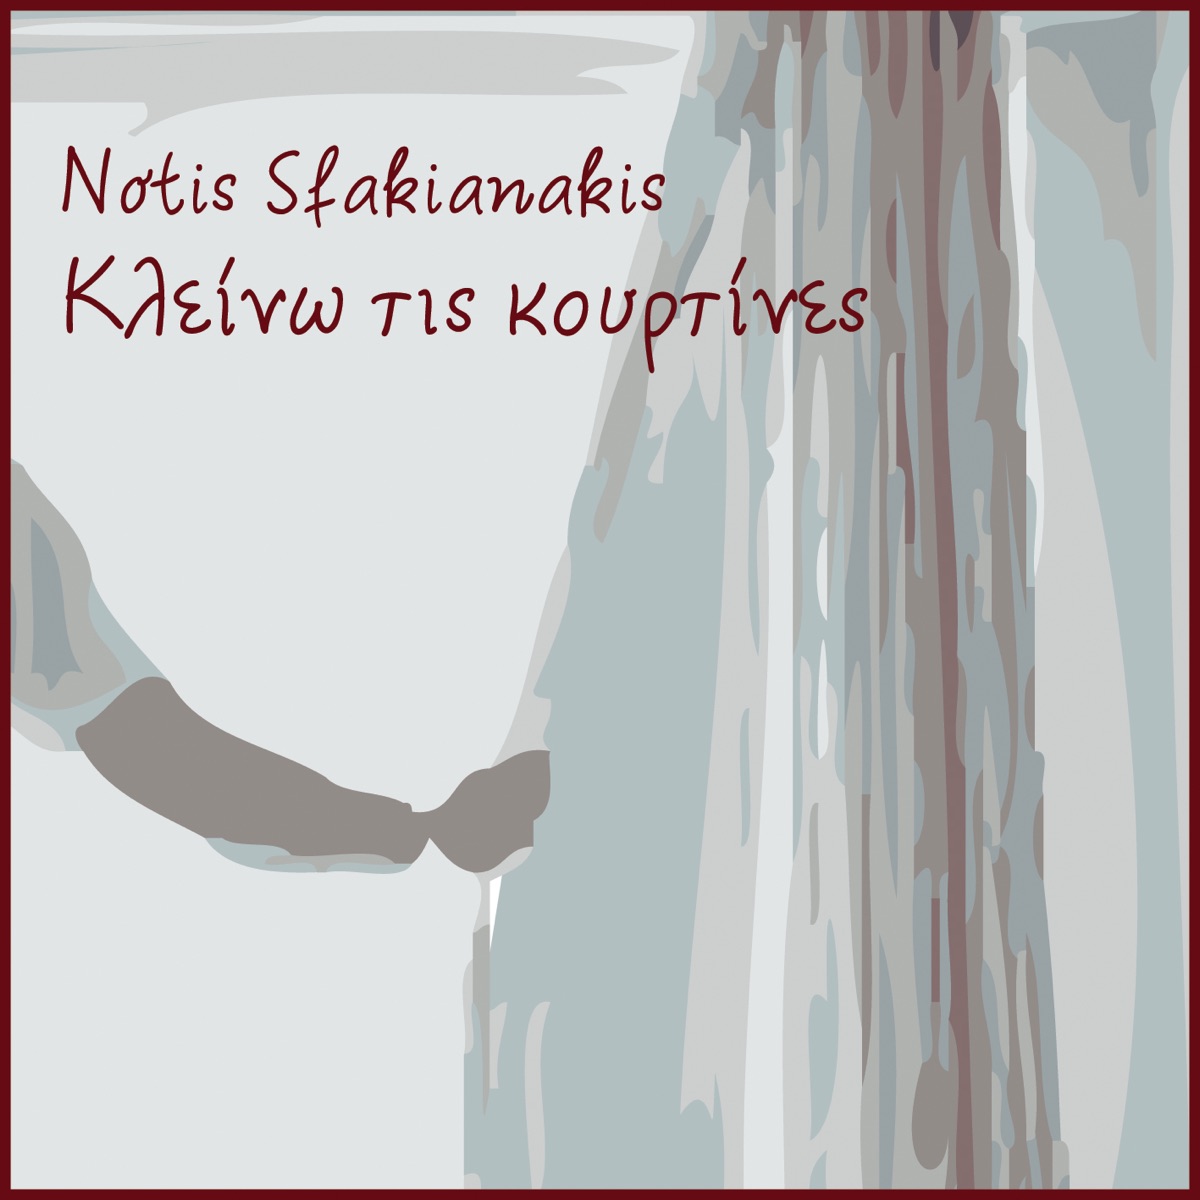 Kleino Tis Kourtines - Single by Notis Sfakianakis on Apple Music